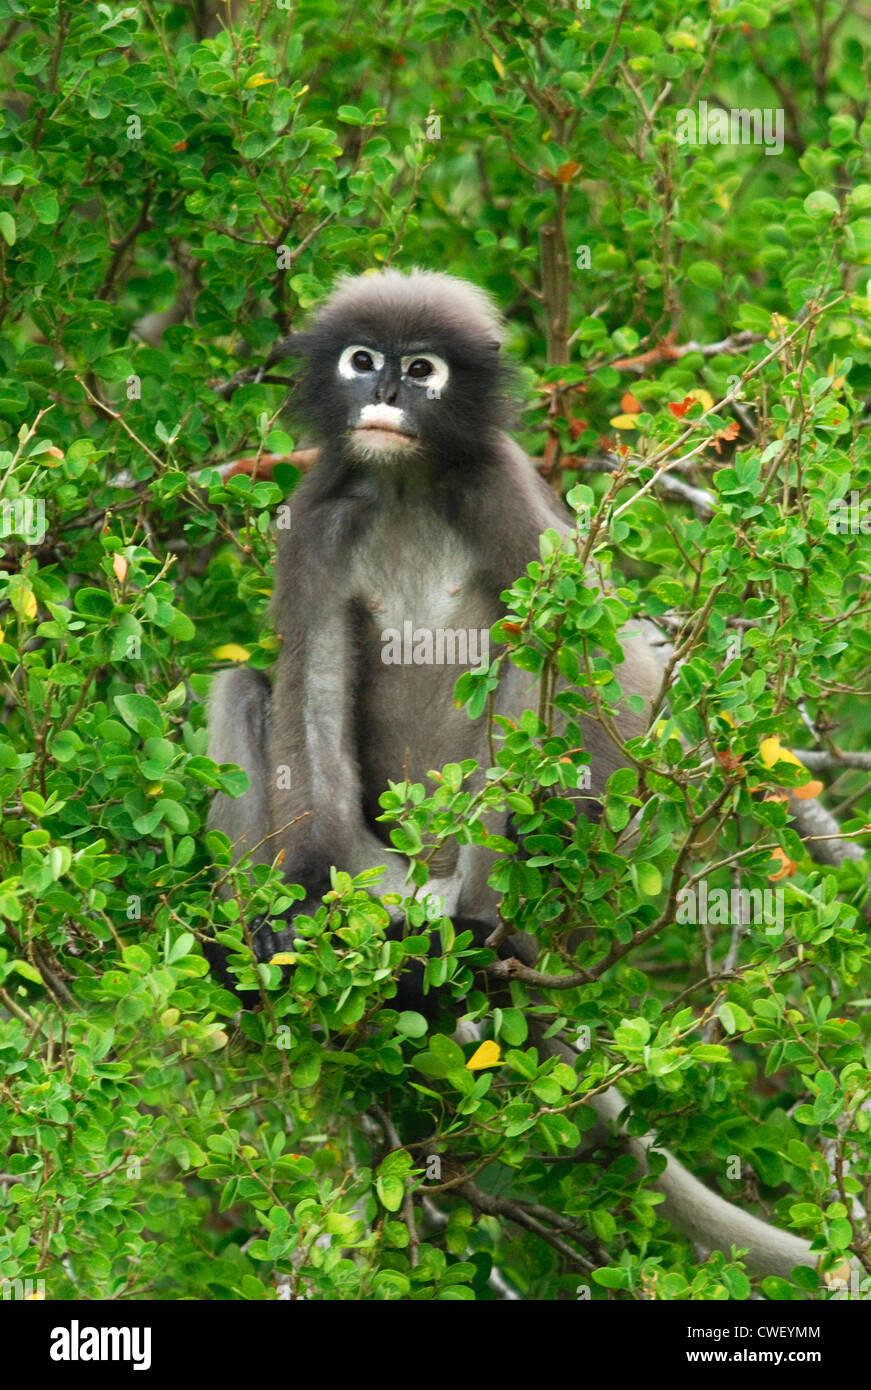 Thailand, portrait of dusky leaf monkey stock photo